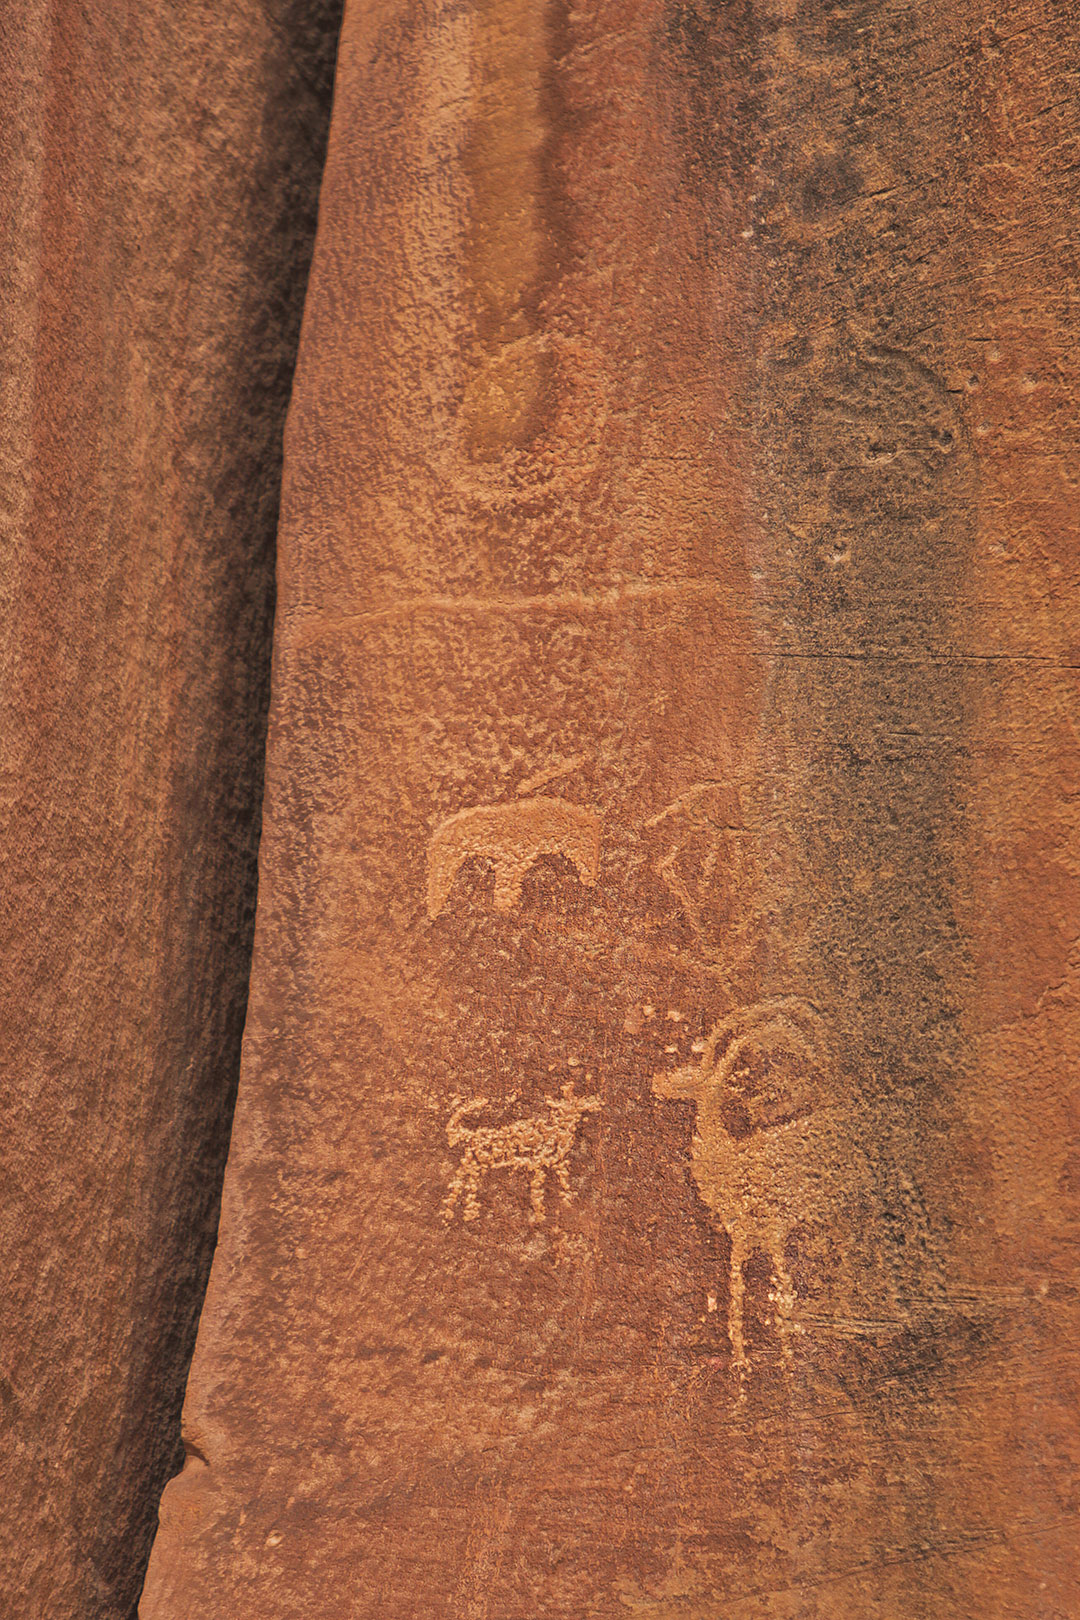 Capitol Reef Utah National Park Petroglyphs